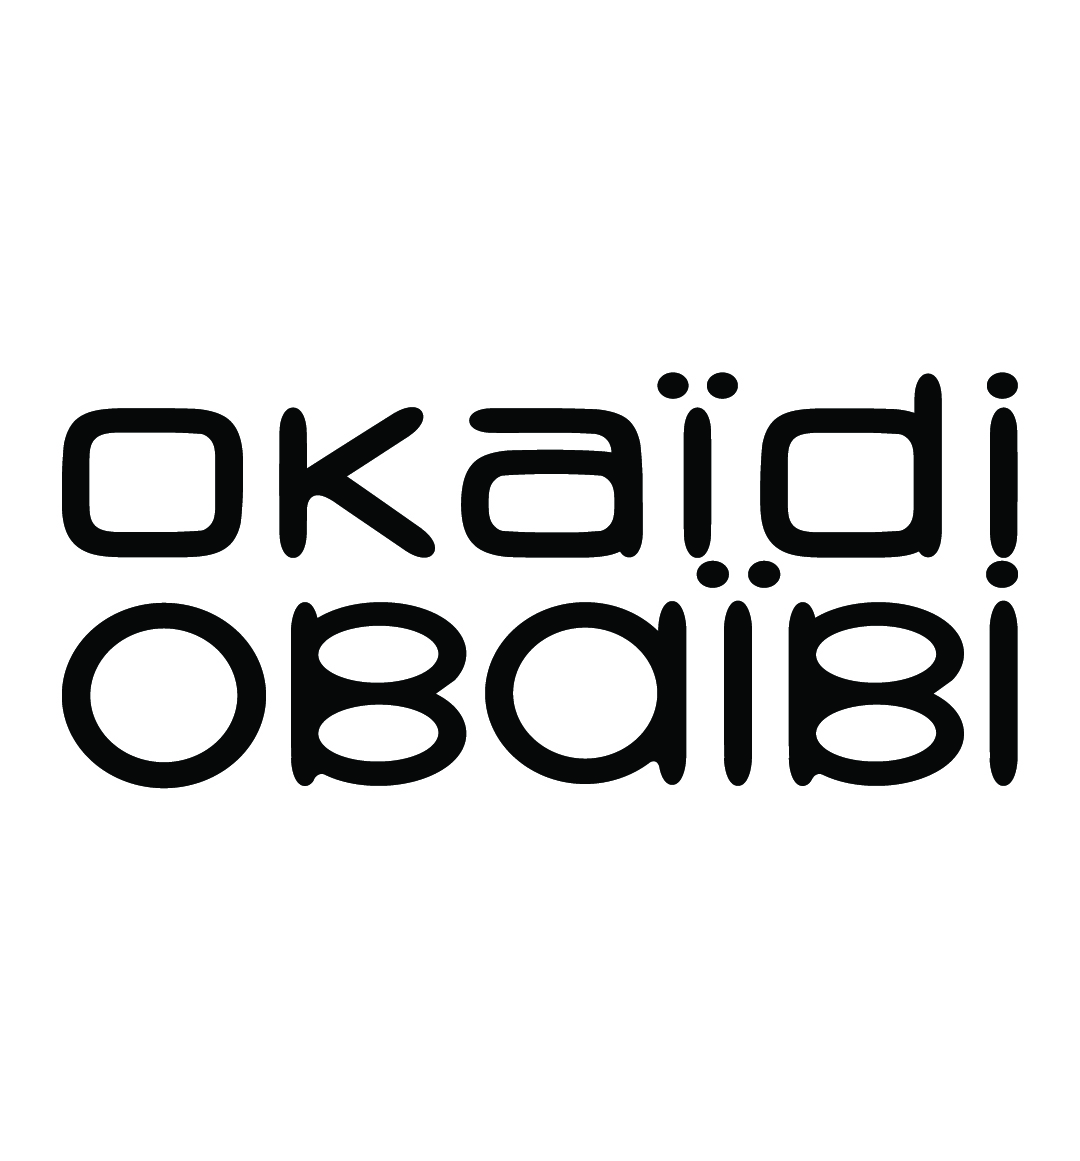 Okaidi